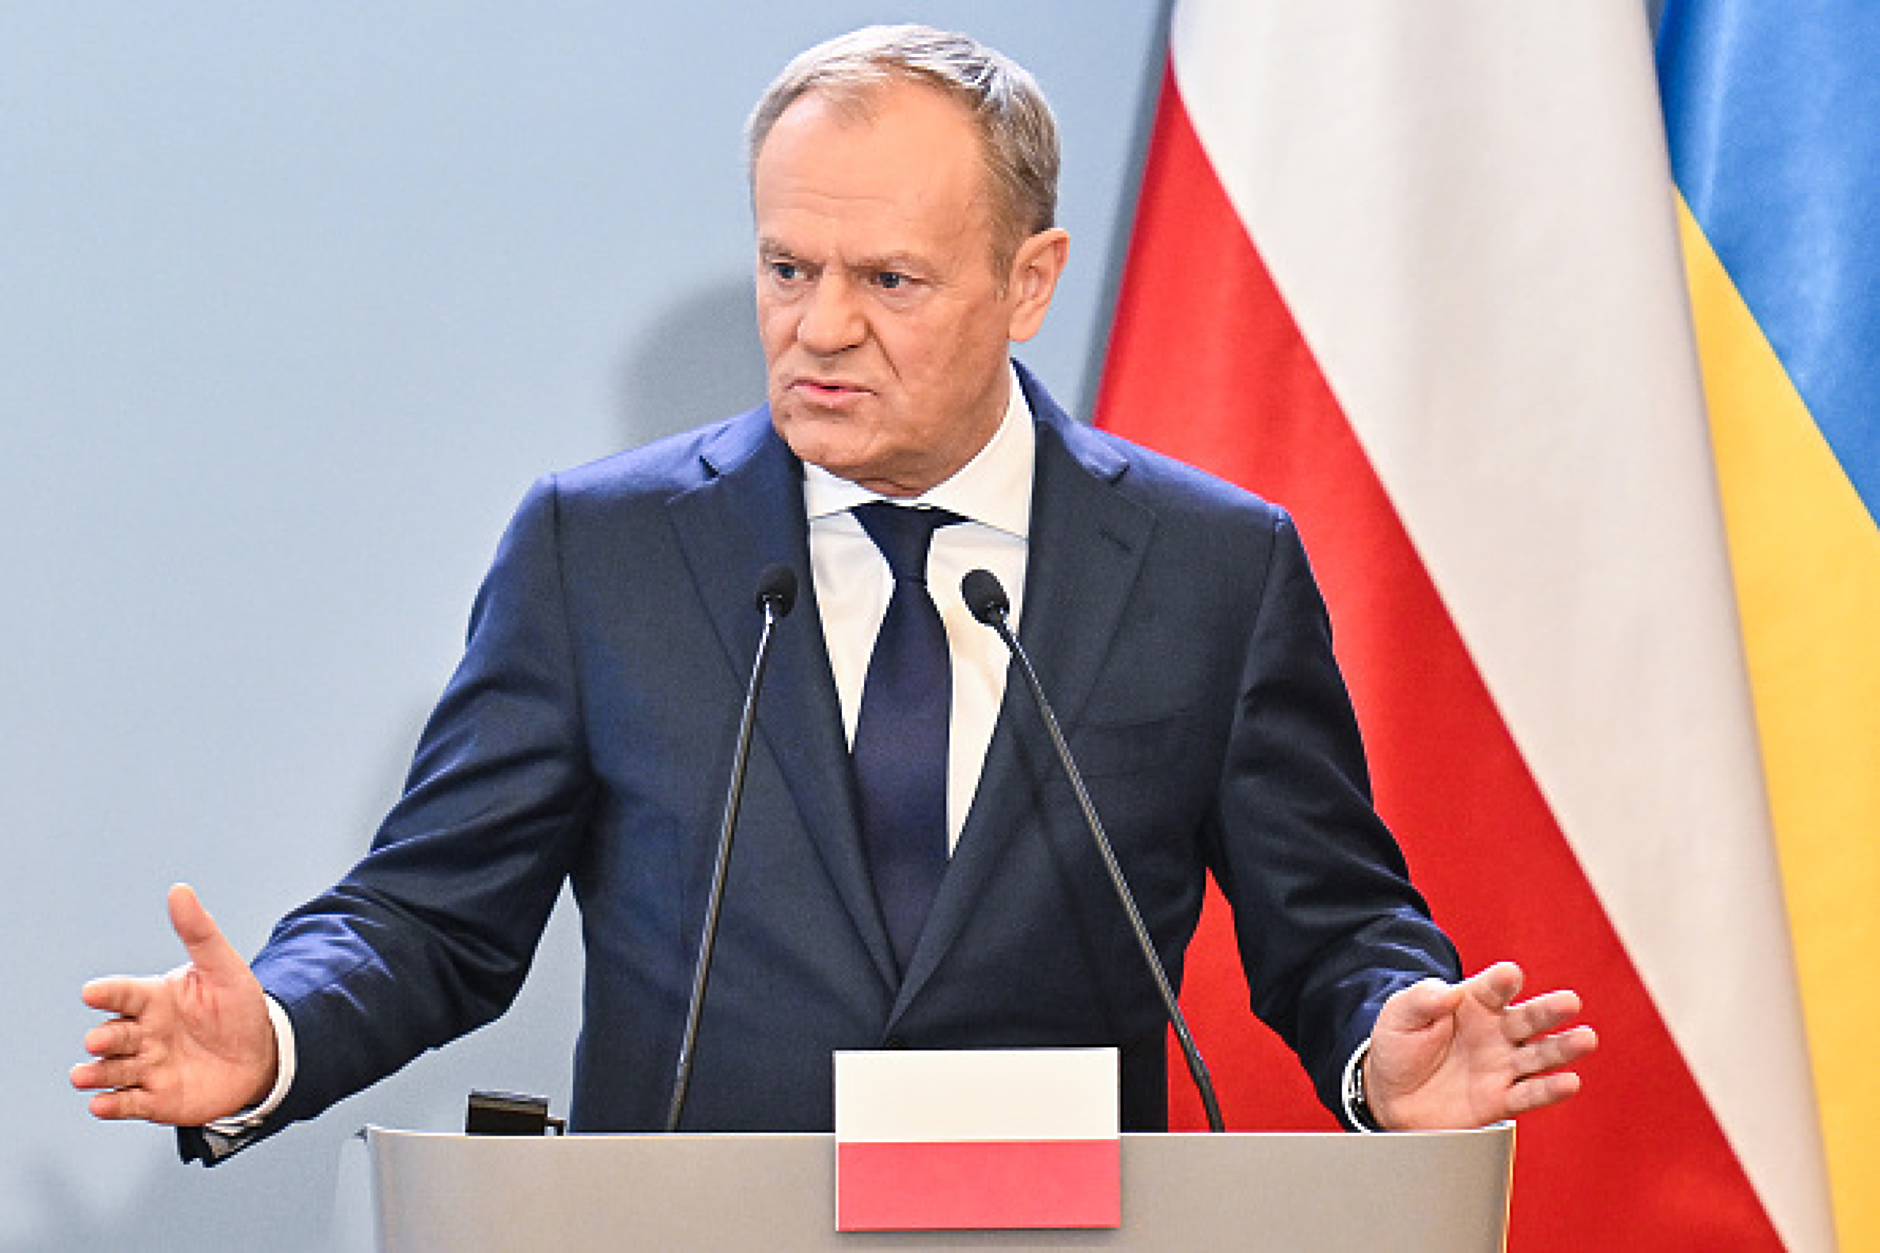 Полският премиер обвини Русия, че се опитва да вкара в Европа хиляди мигранти от Африка 